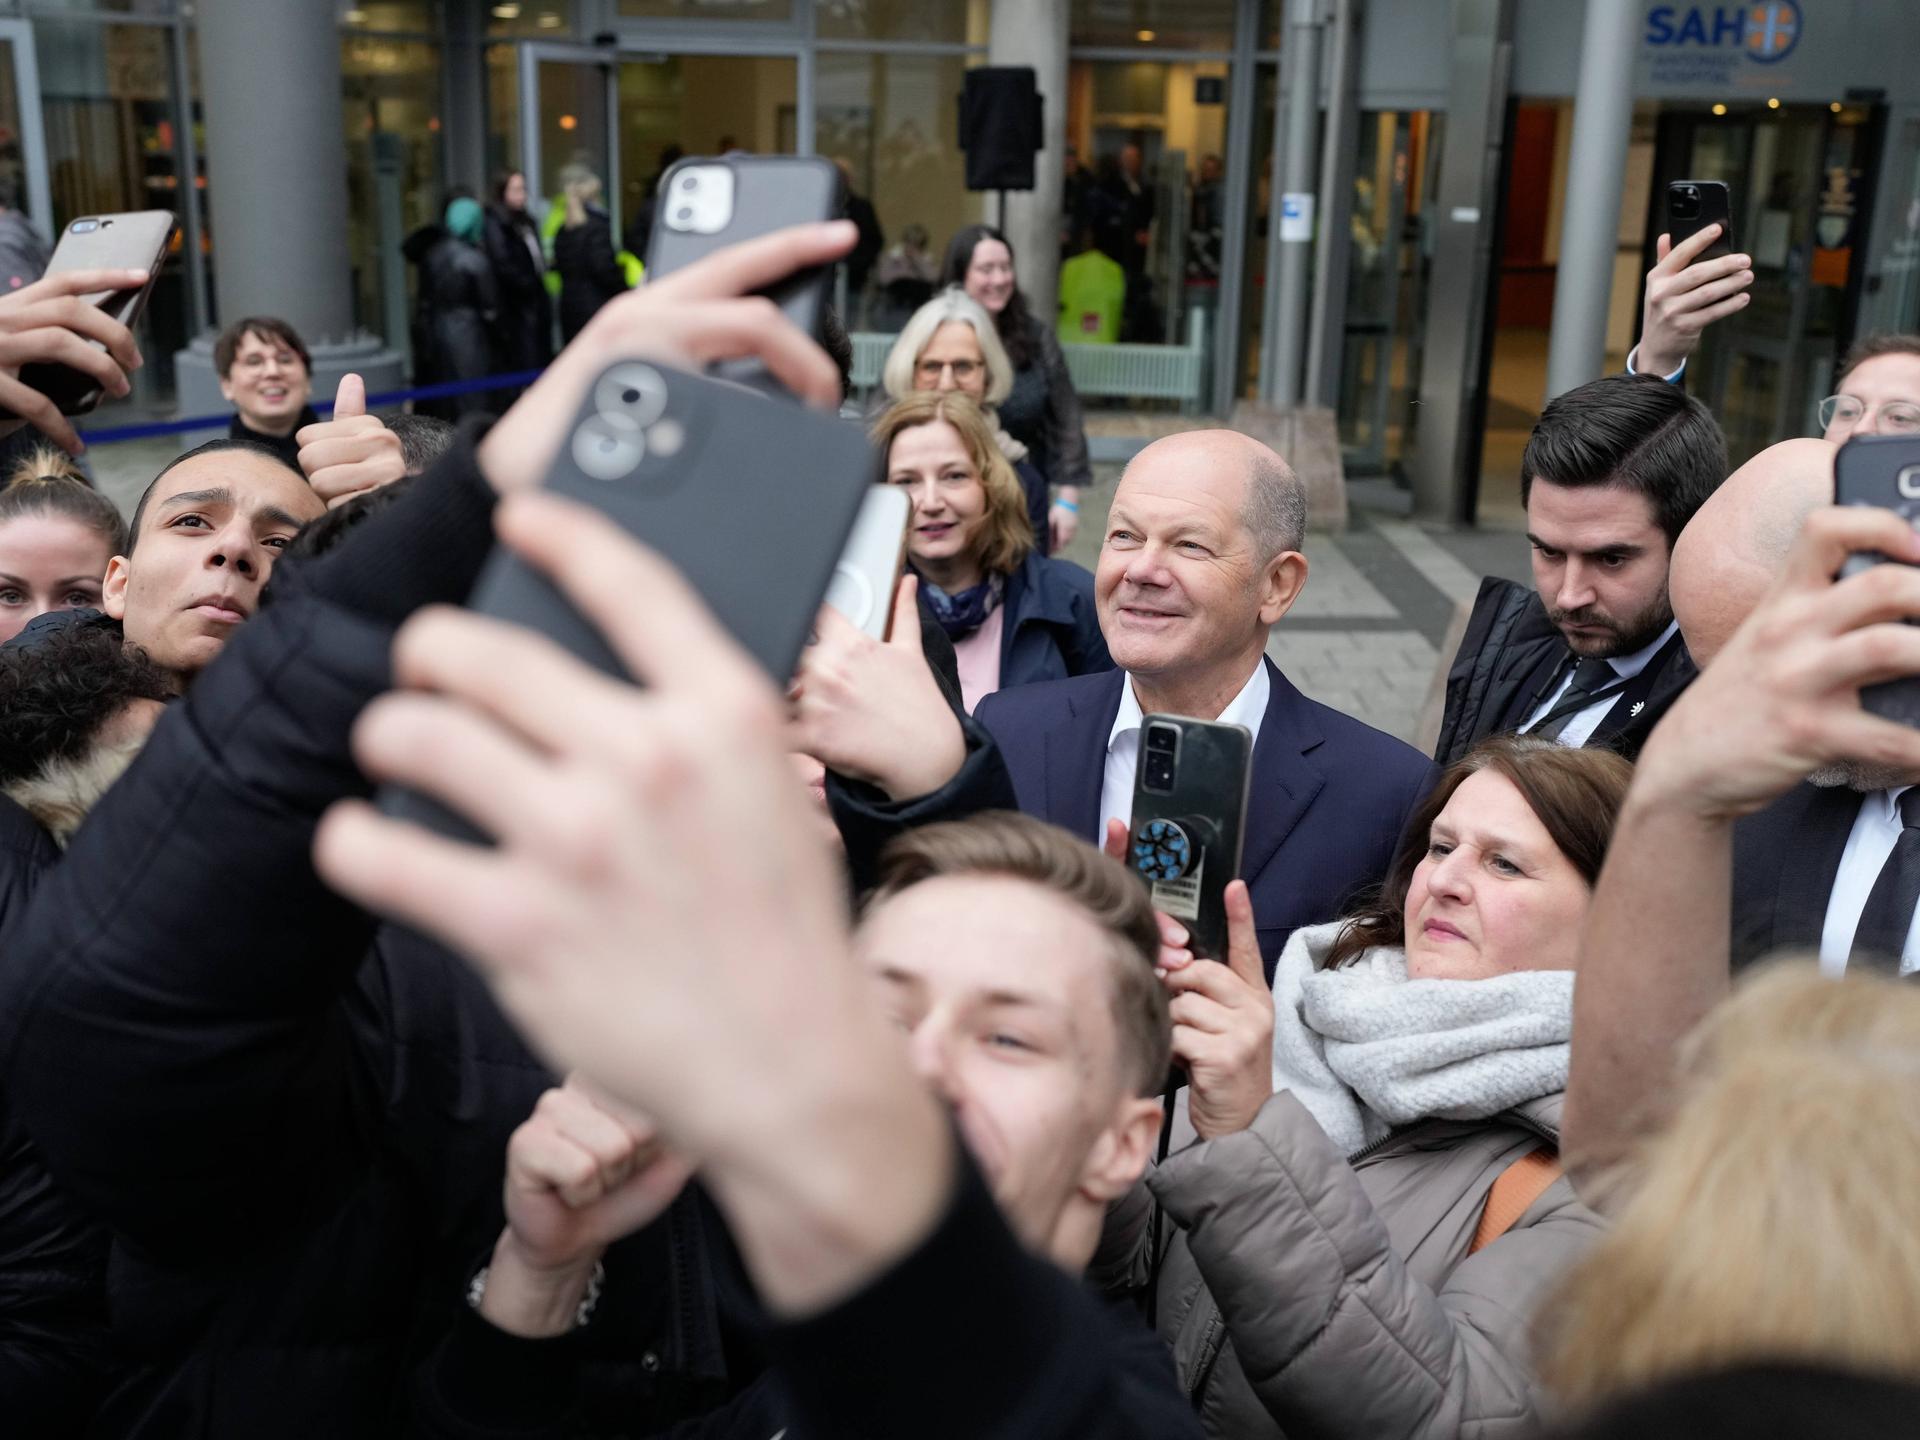 Bundeskanzler Scholz zwischen jungen Menschen, die Selfies mit ihm machen.